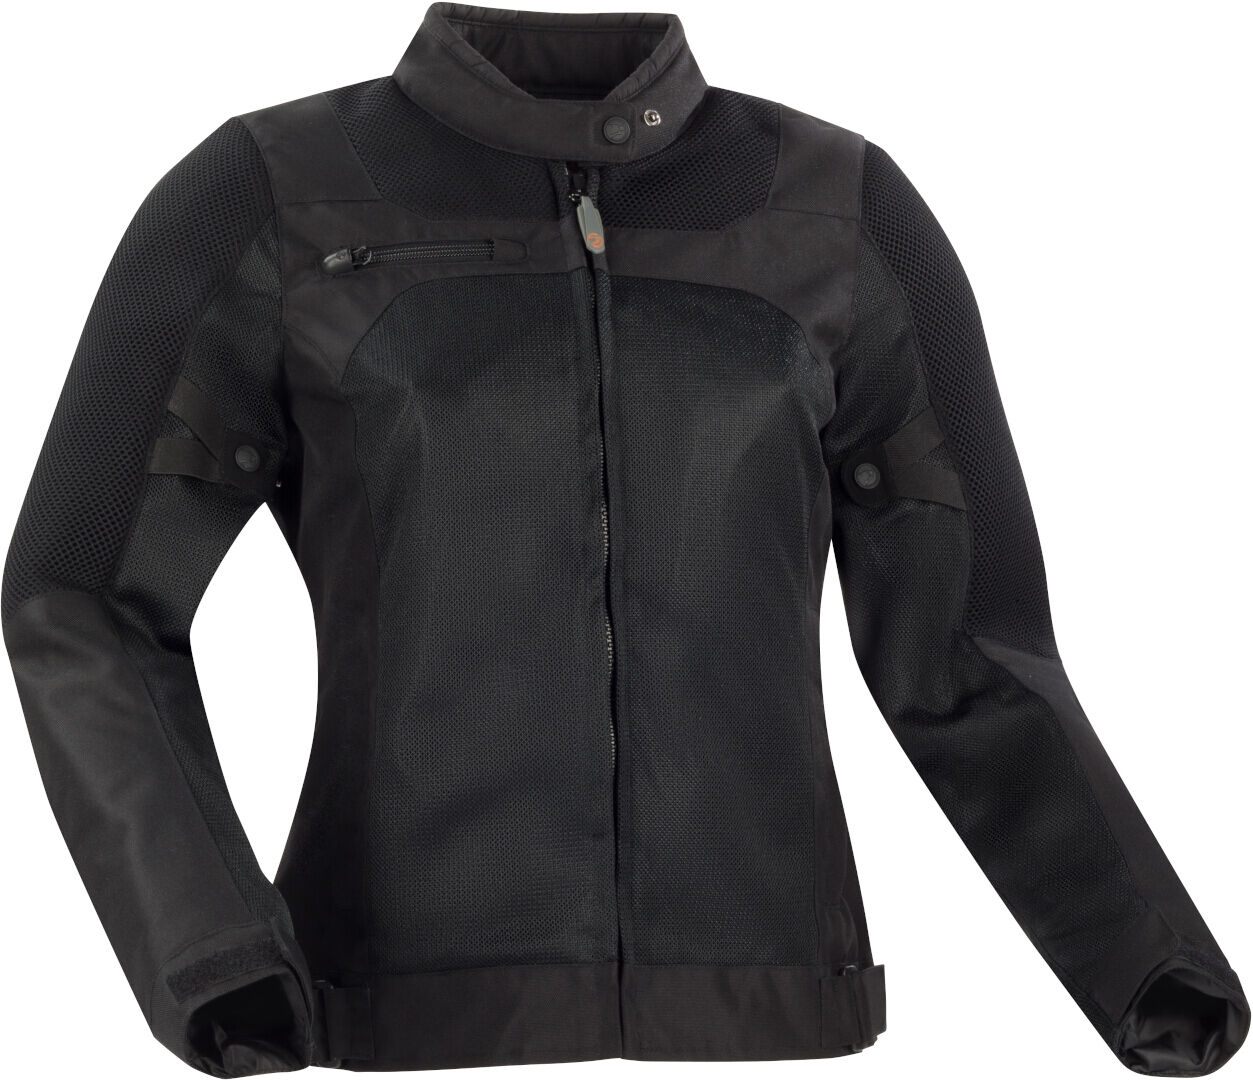 Bering Malibu Damas motocicleta chaqueta textil - Negro (44)